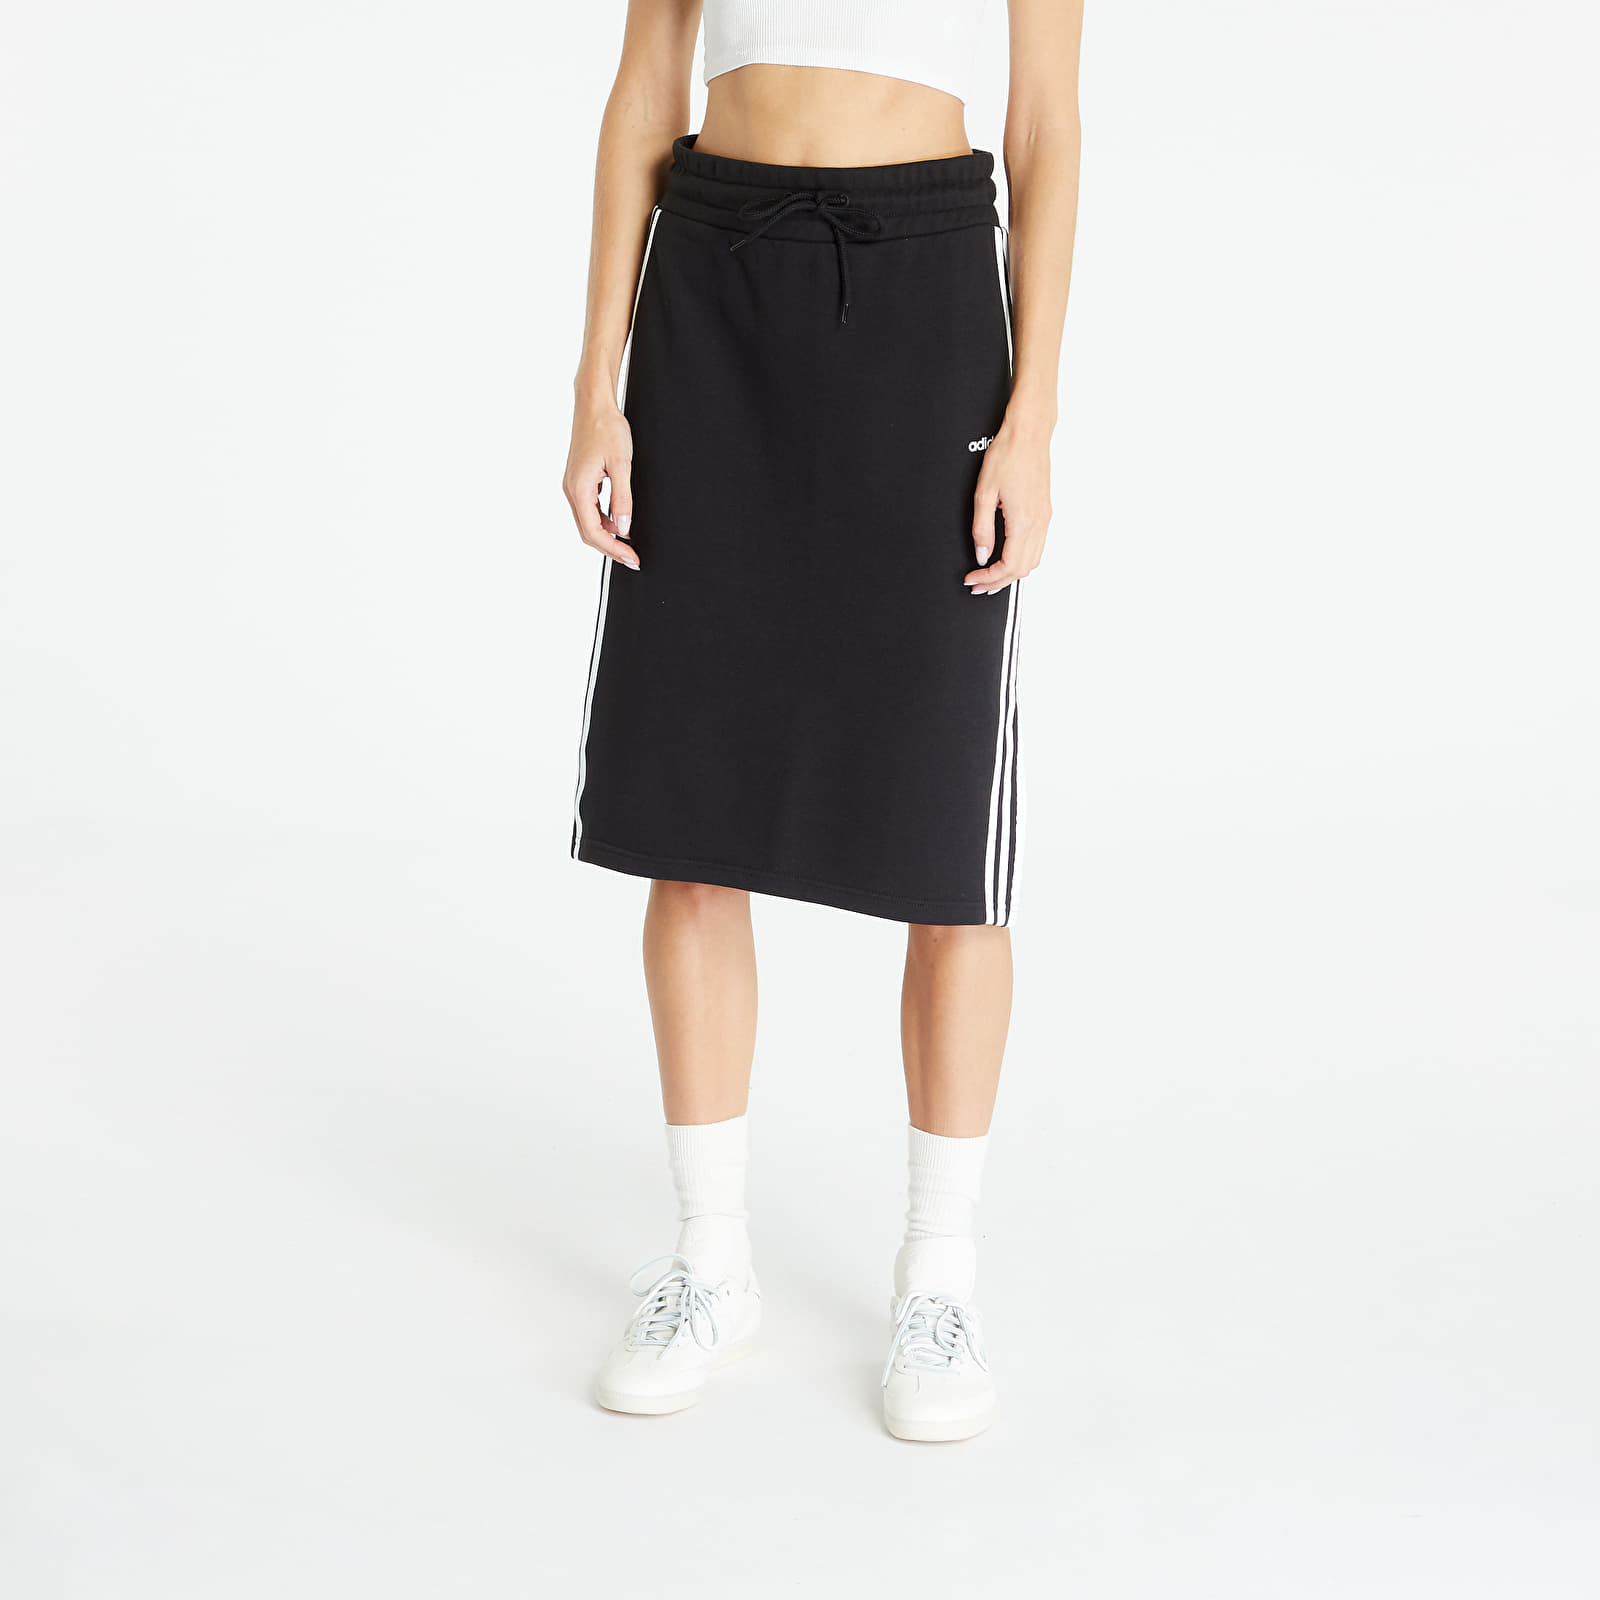 Φούστες adidas Originals 3-Stripes Skirt Black